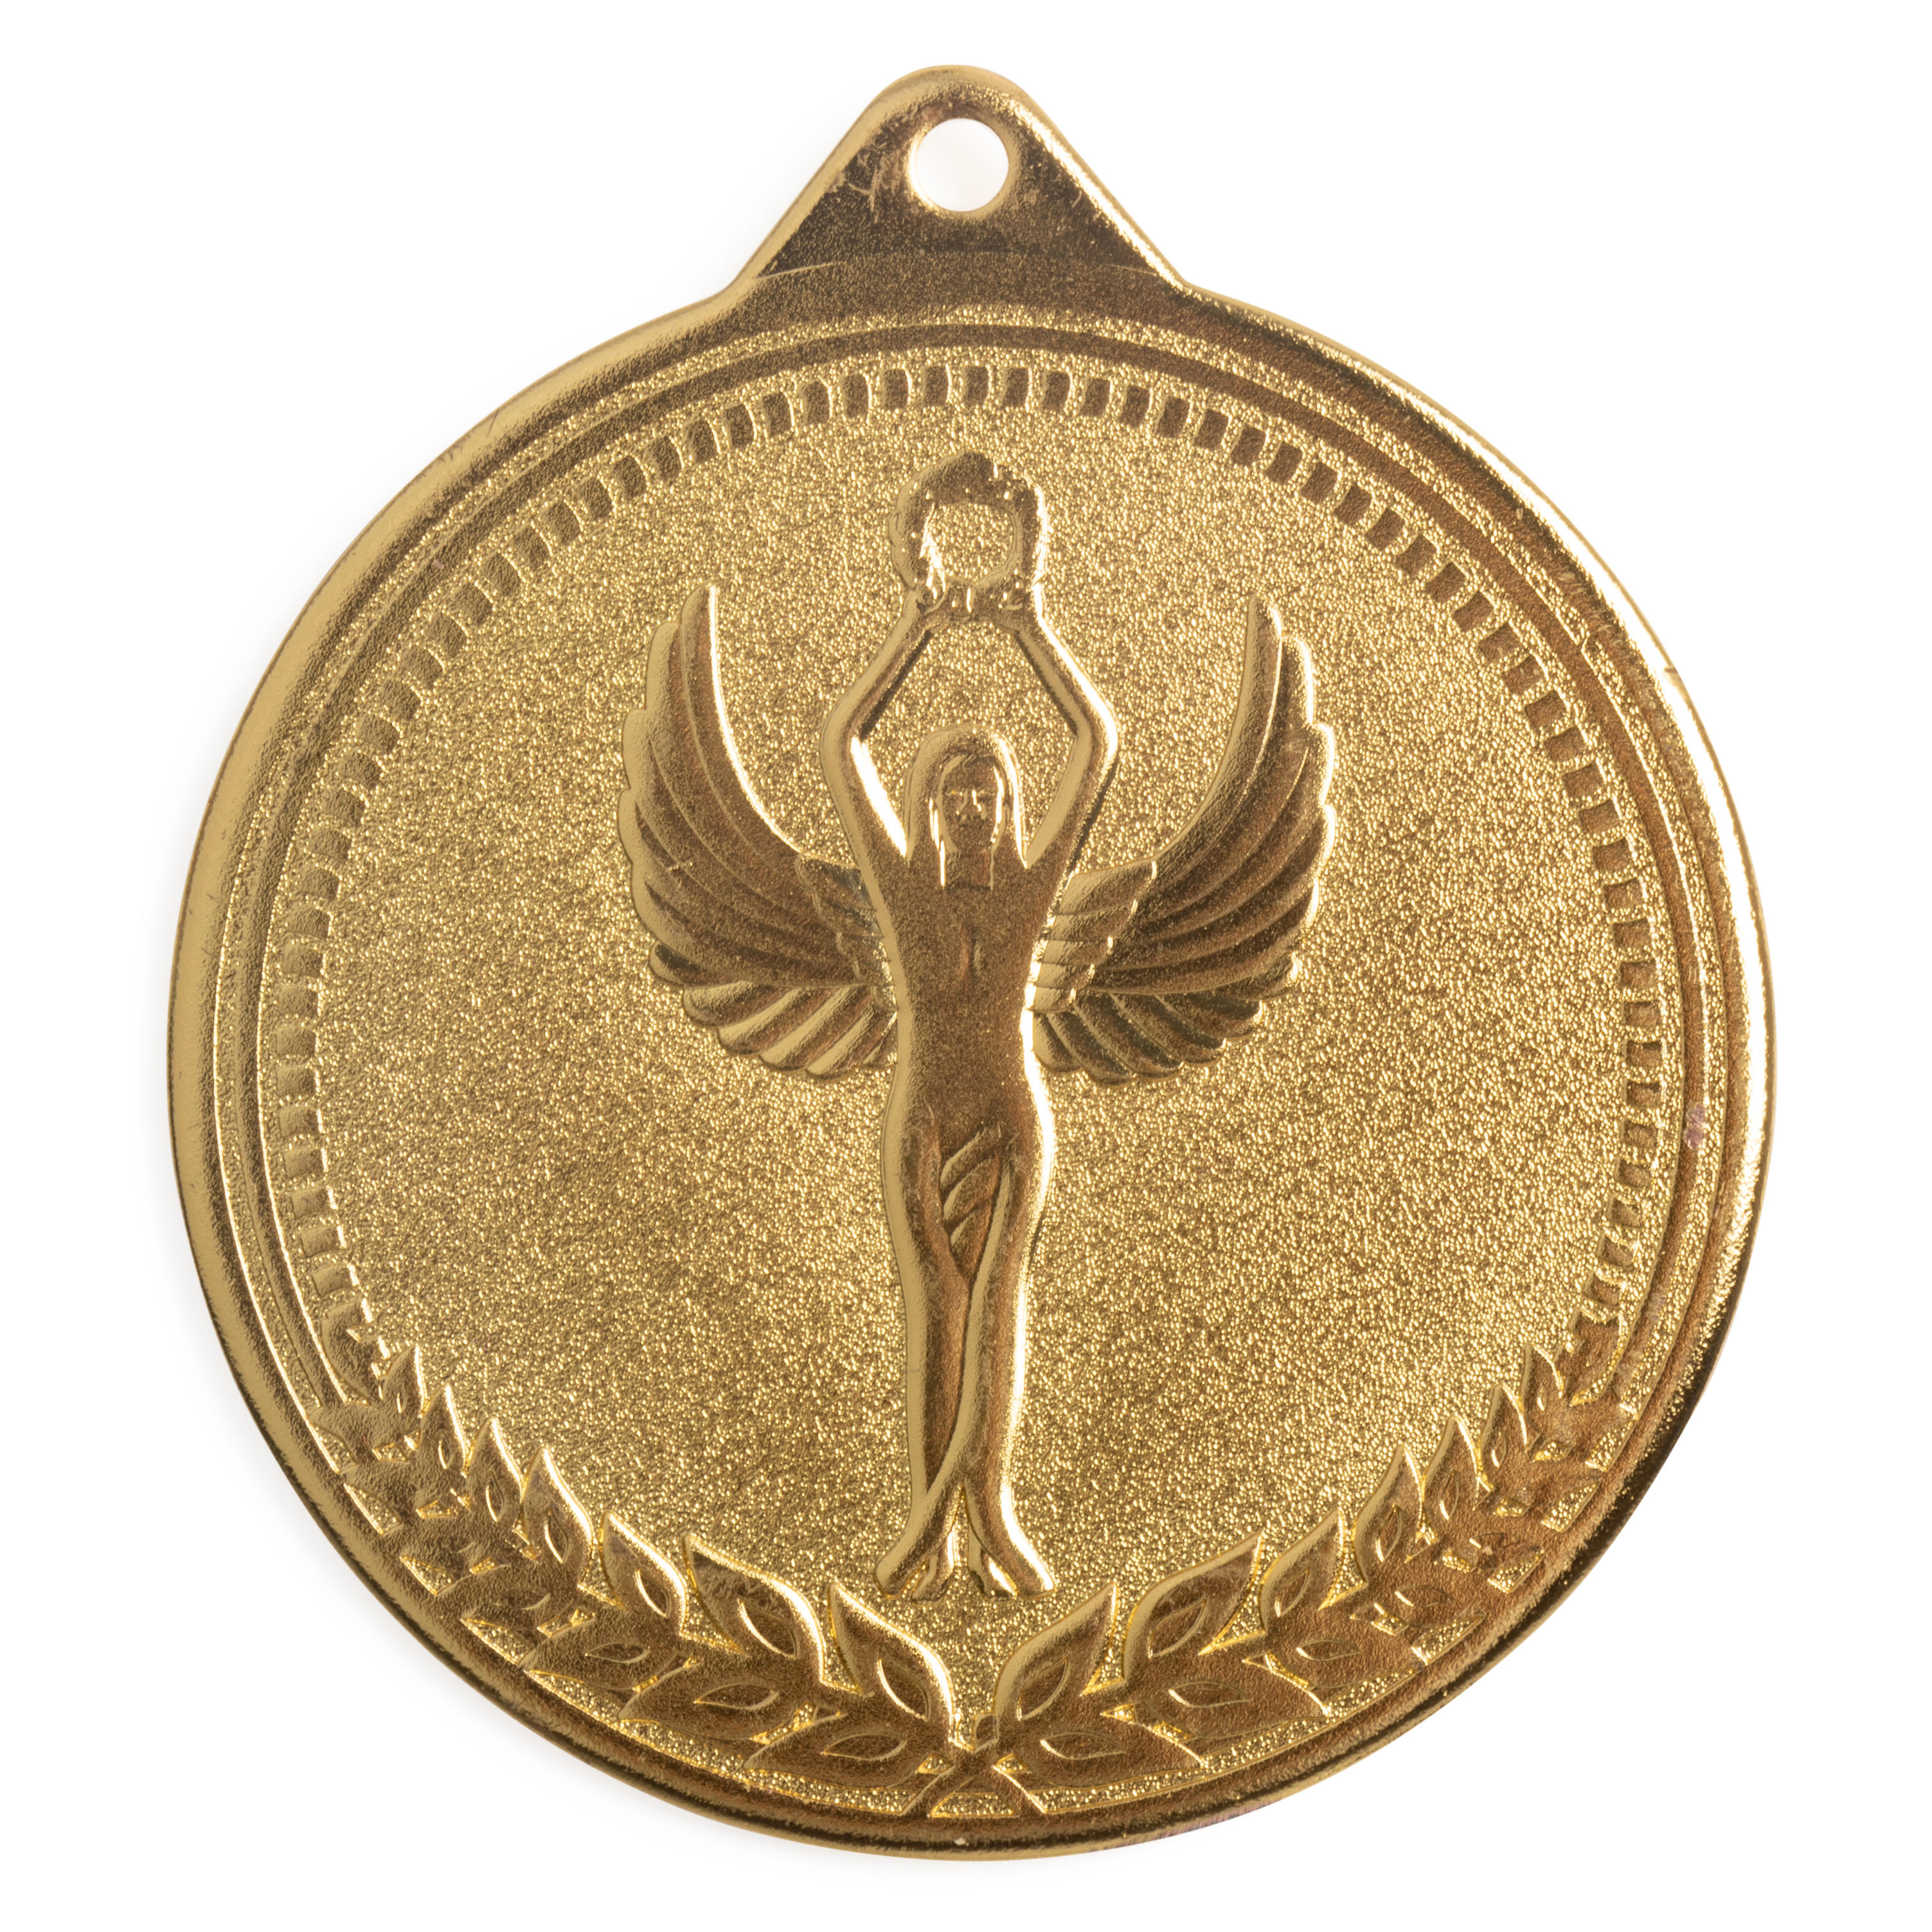 Medalie Victorie 70 MM WORKSHOP decathlon.ro